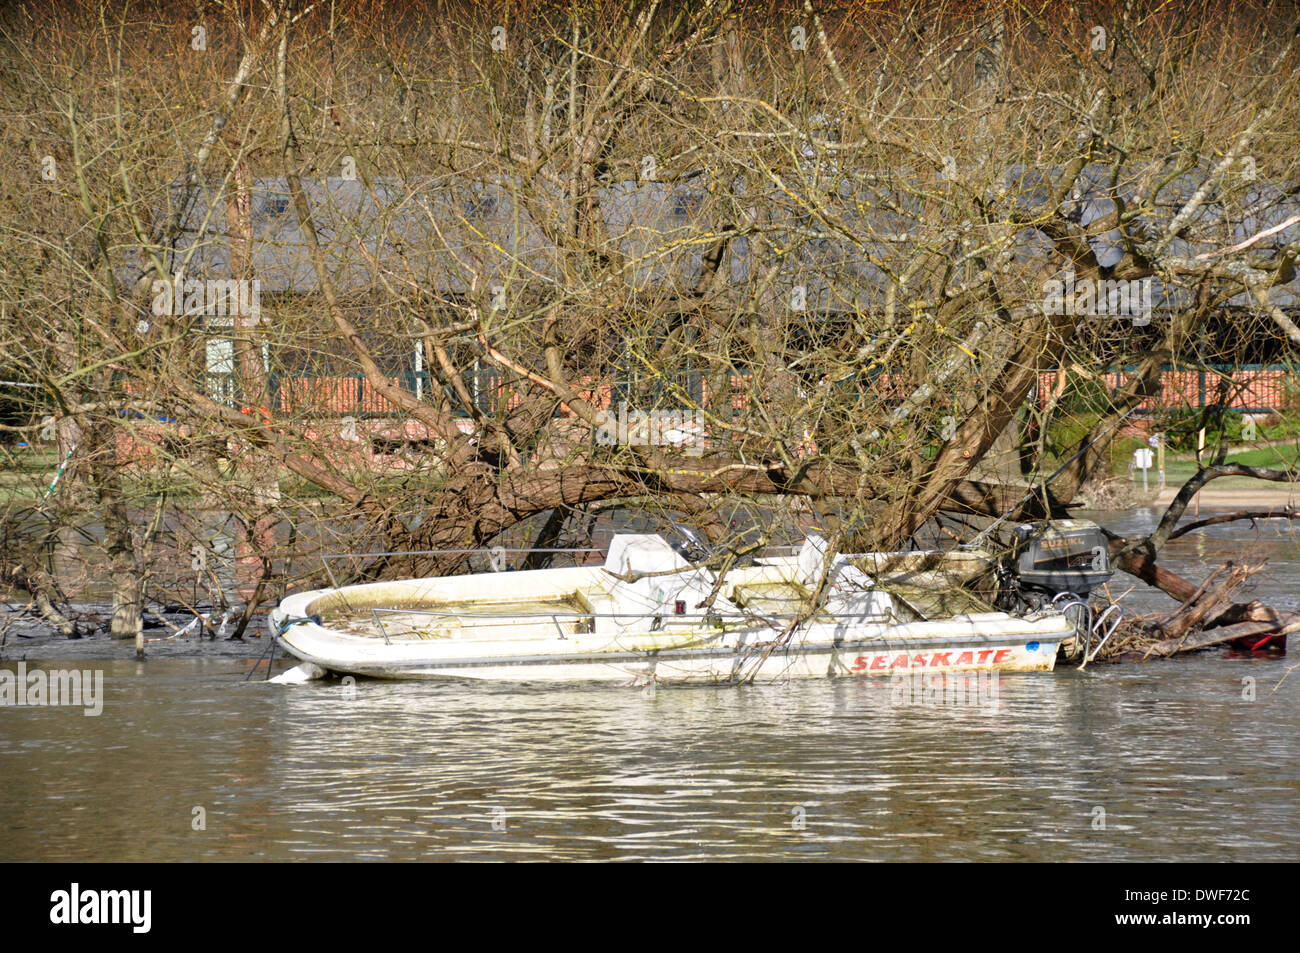 Sul Tamigi in Oxon - al di sotto di Henley town - rigonfie inondati di fiume - imbarcazione a motore alla deriva e snagged in alberi sradicati Foto Stock